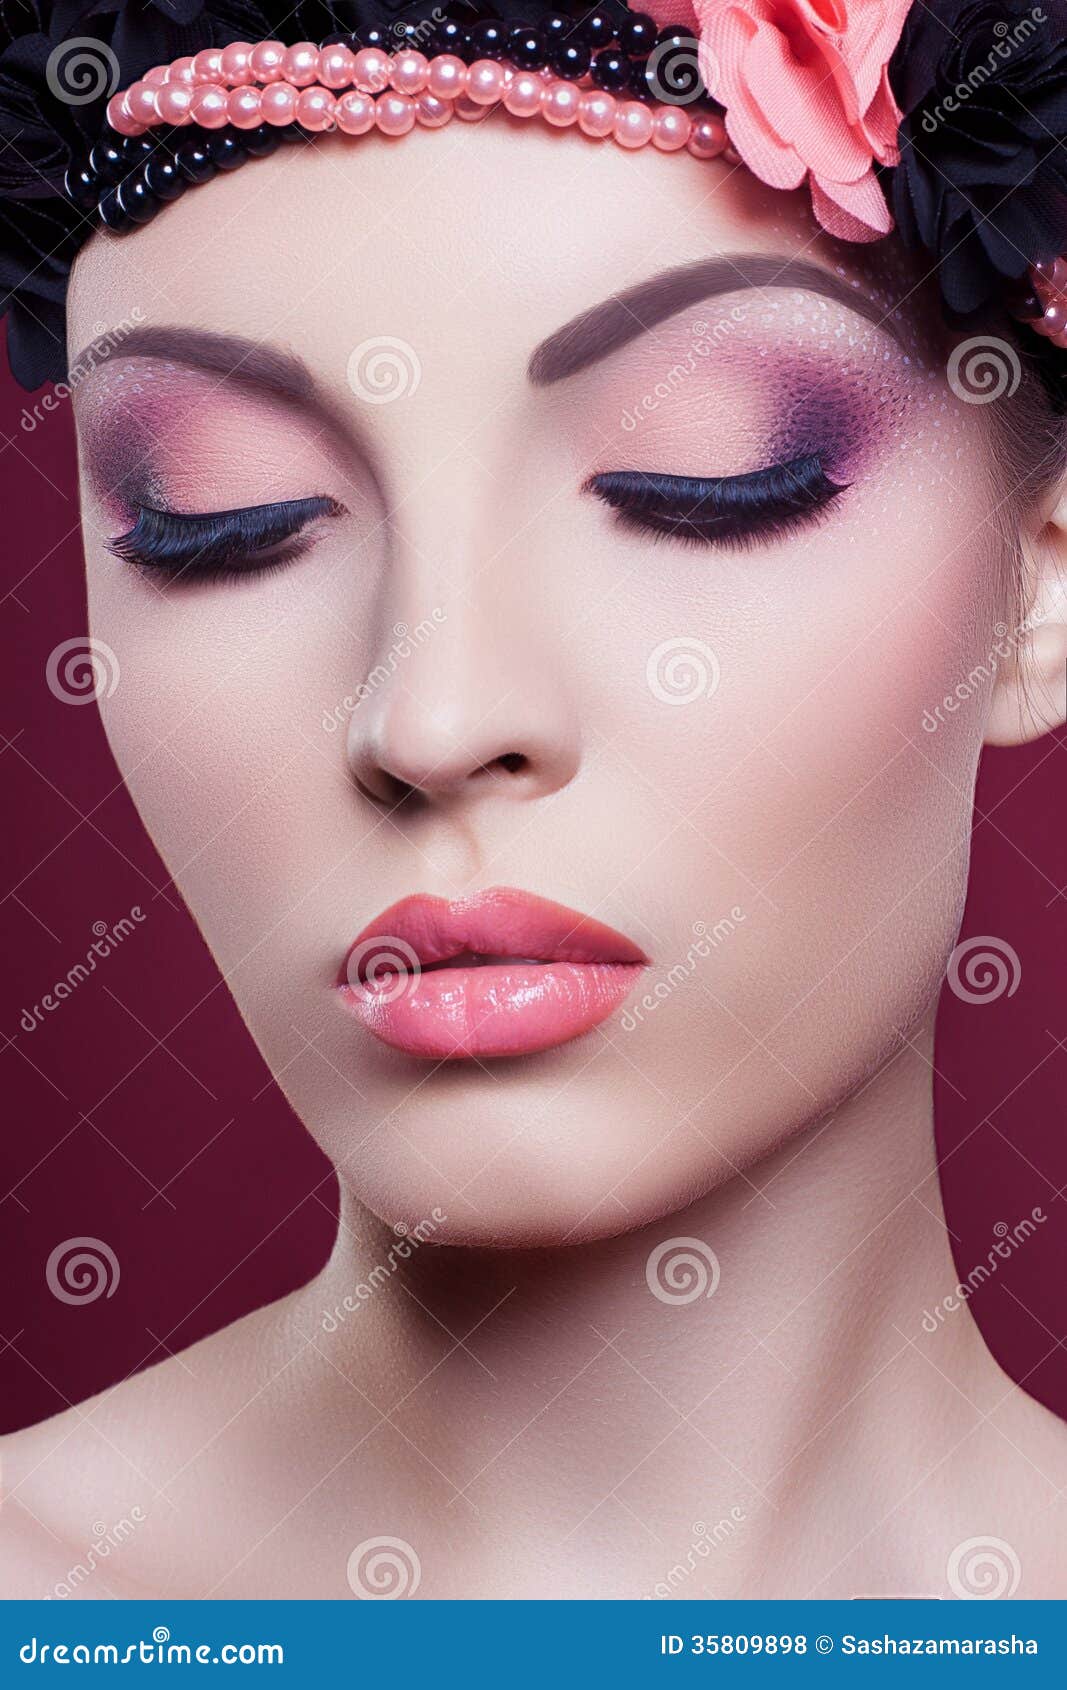 Woman Beautiful Face Closeup Fashion Portrait Pink Make Up 